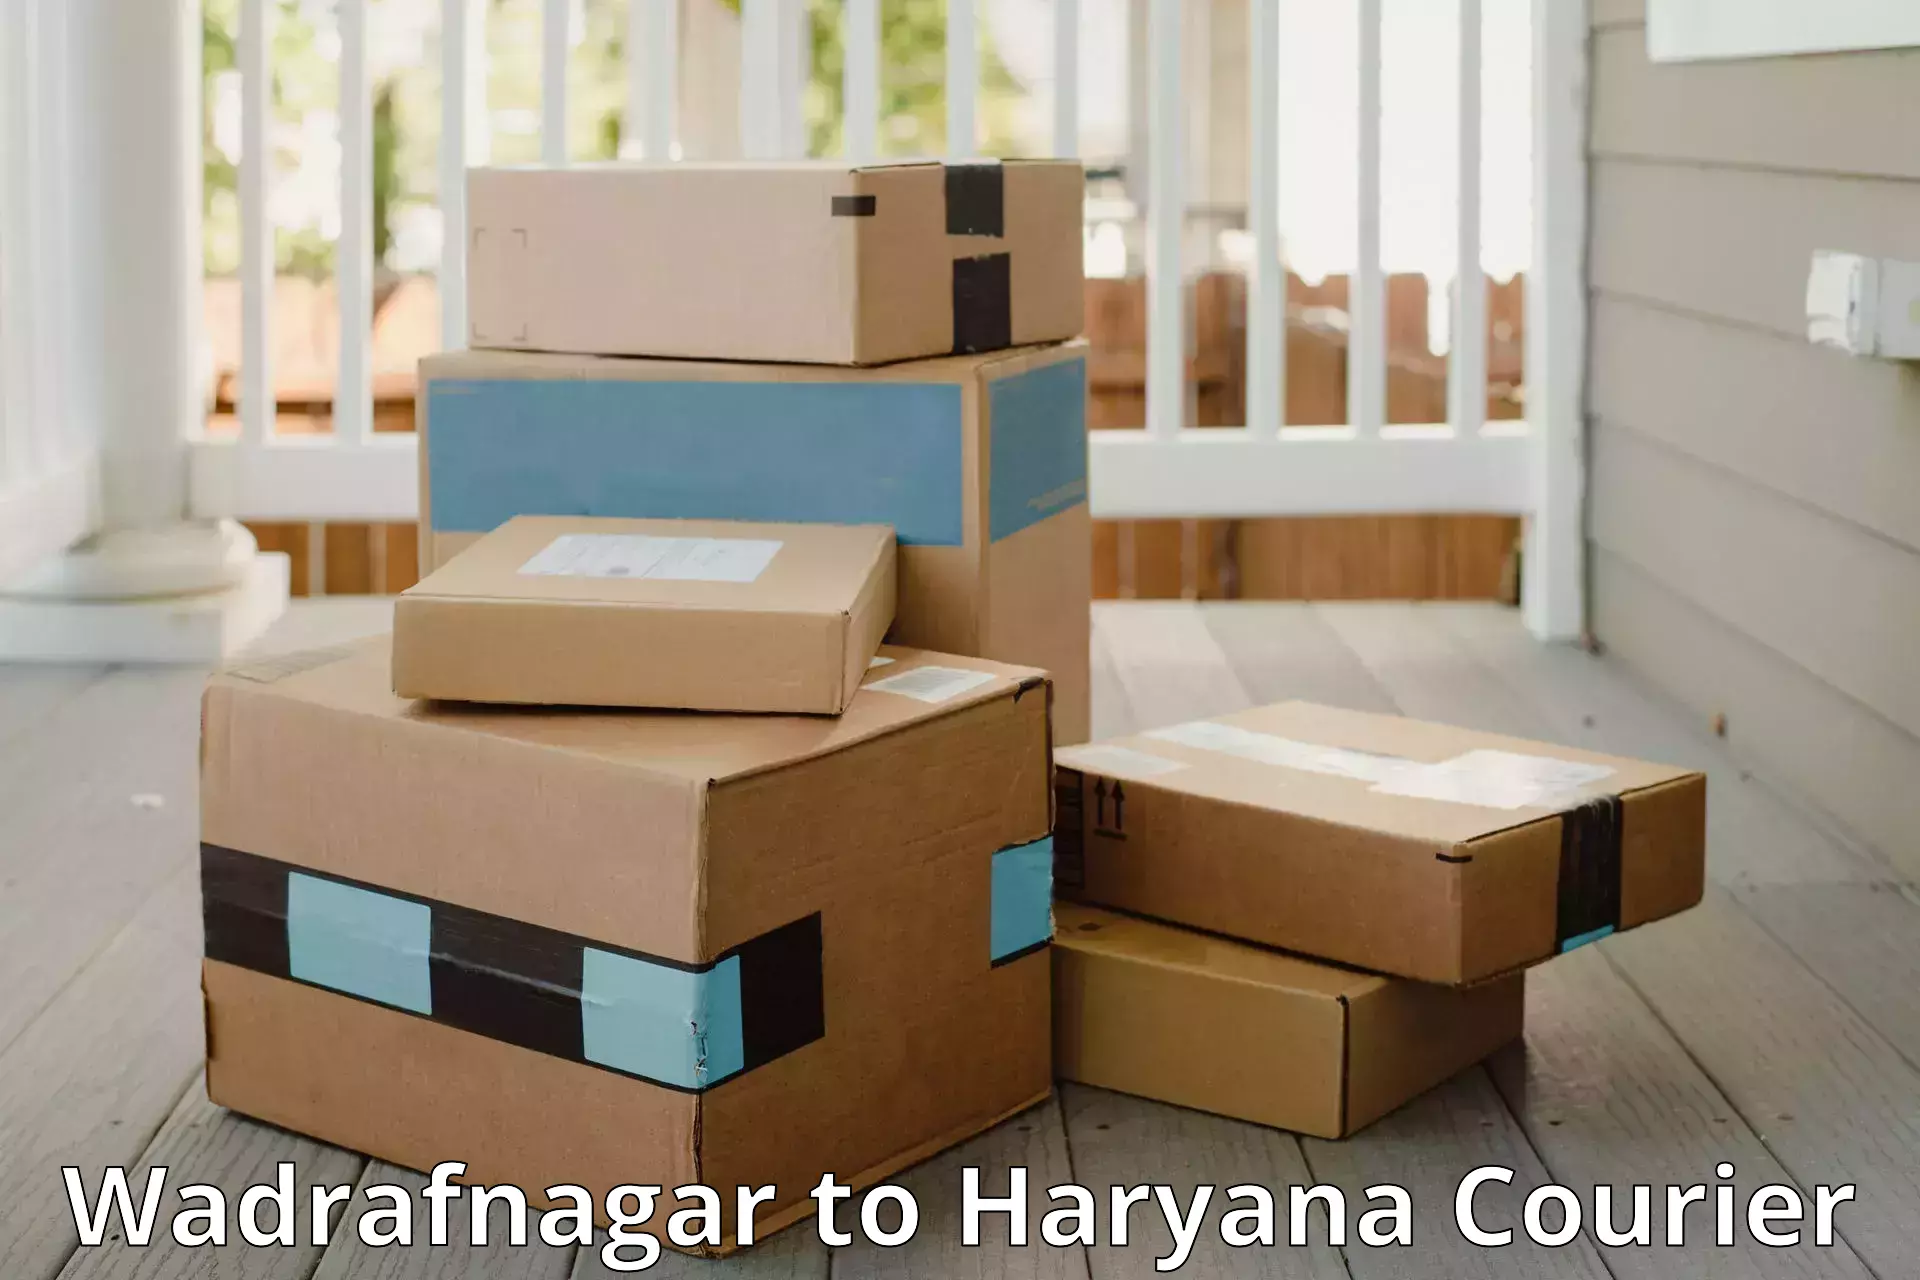 High-quality baggage shipment in Wadrafnagar to Buguda